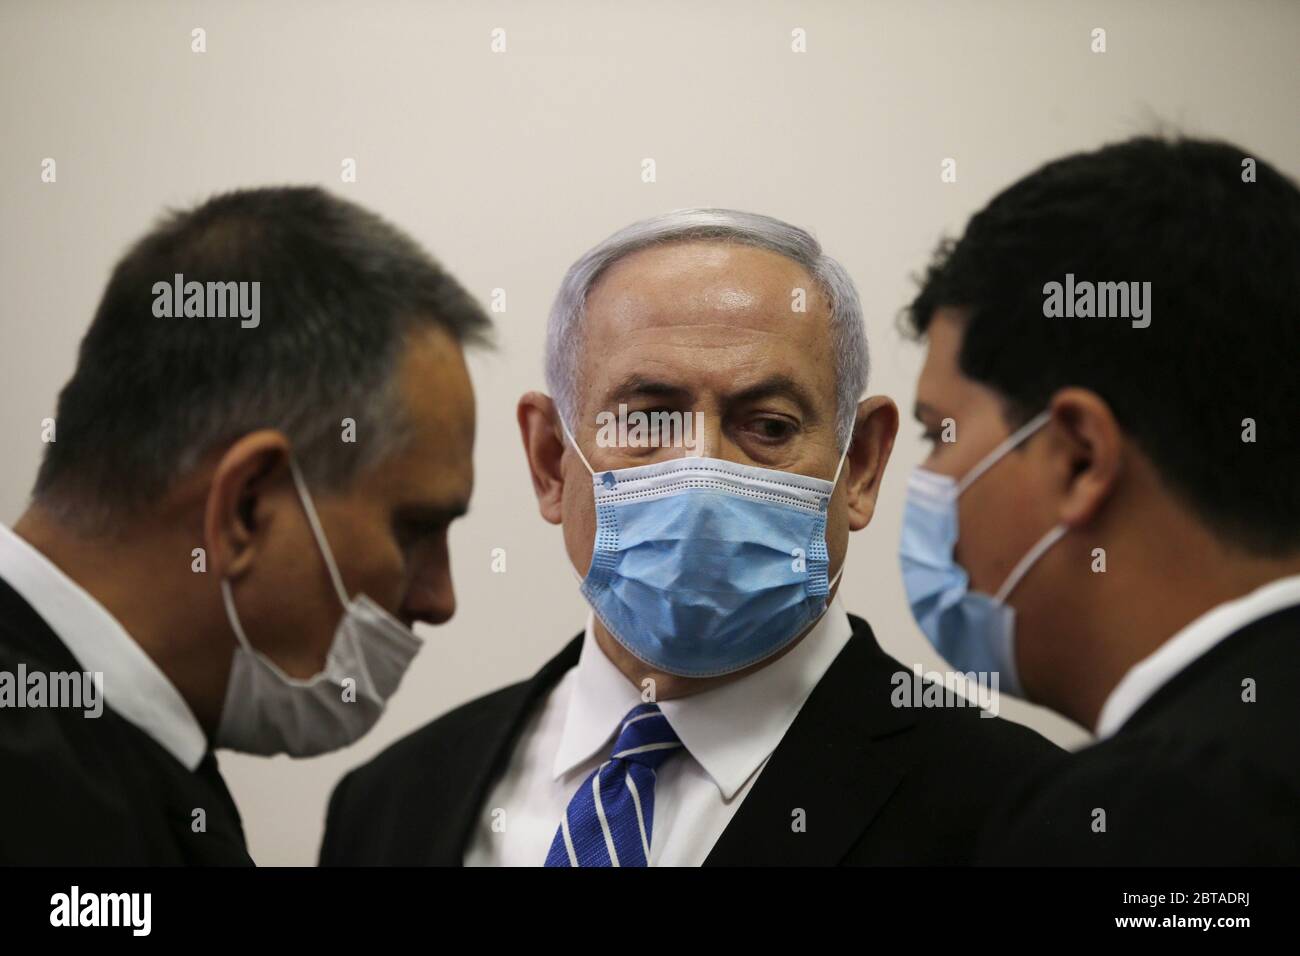 Gerusalemme, Israele. 24 maggio 2020. Il primo ministro israeliano Benjamin Netanyahu, indossando una maschera facciale, guarda il suo avvocato mentre si trova all'interno della stanza di corte mentre il suo processo di corruzione si apre alla corte distrettuale di Gerusalemme domenica 24 maggio 2020. Netanyahu attaccò il sistema giudiziario israeliano, diventando il primo primo ministro seduto a essere processato. Foto in piscina di Ronen Zvulun/UPI Credit: UPI/Alamy Live News Foto Stock